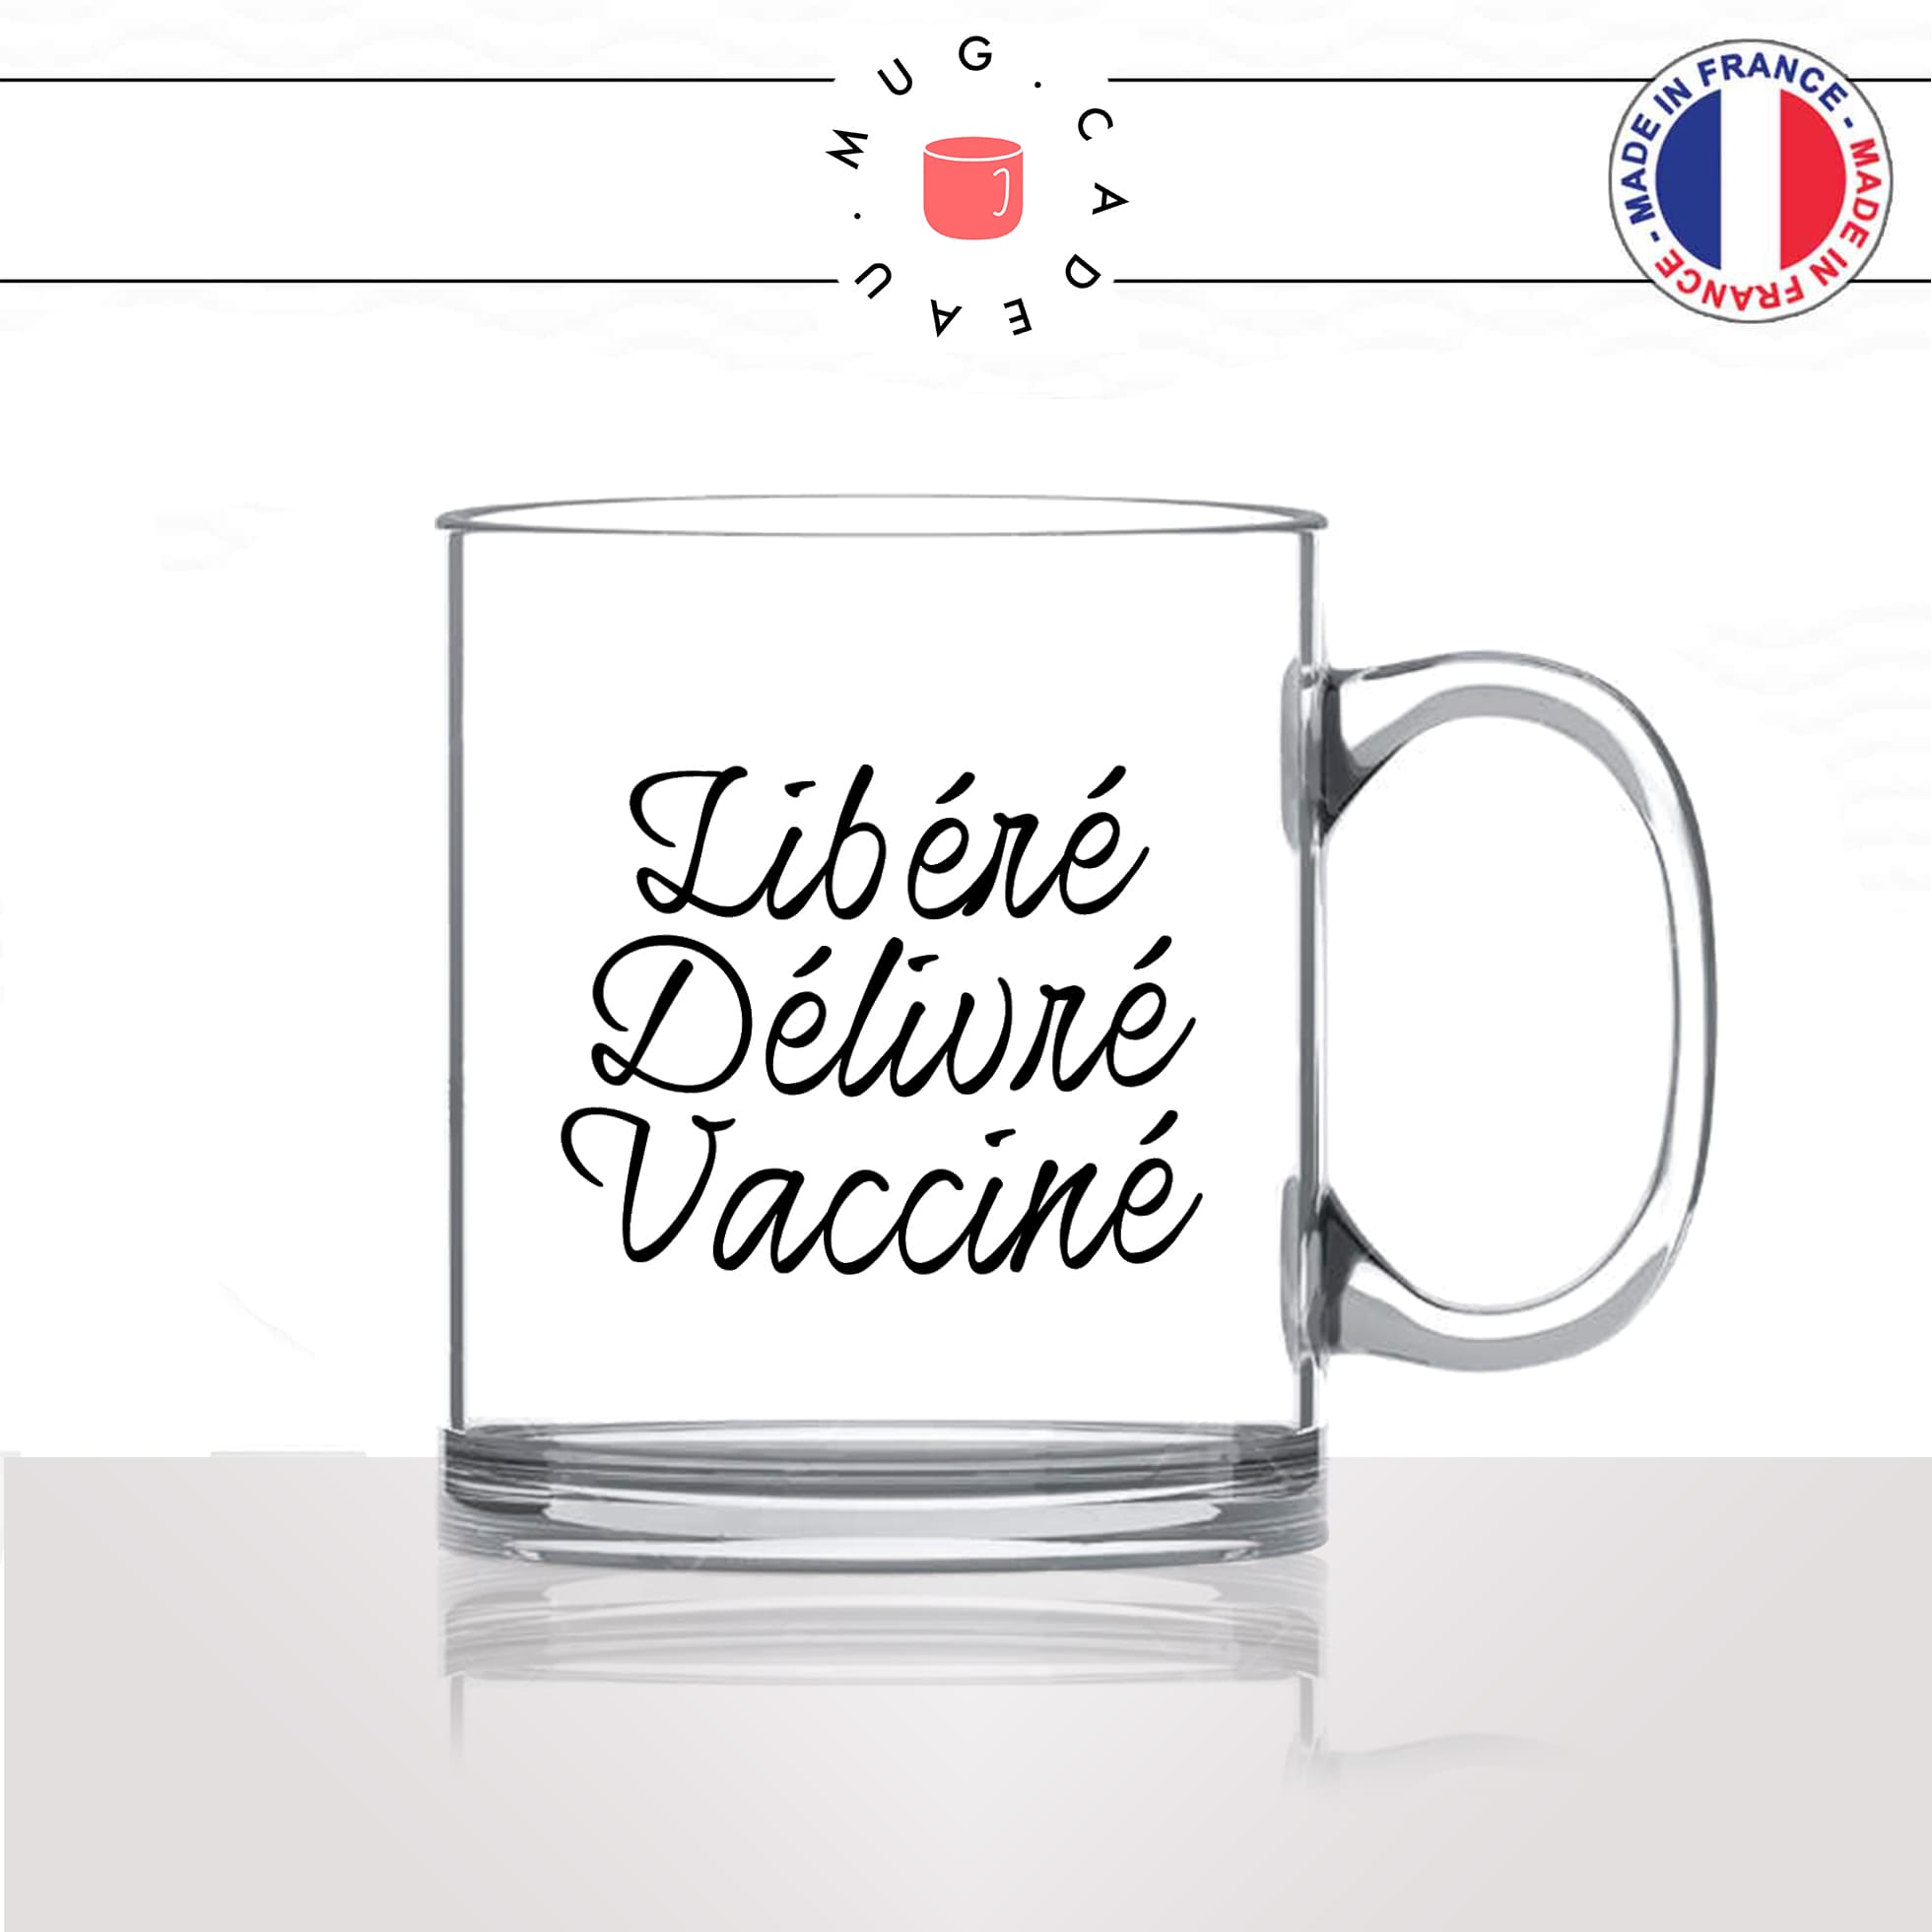 mug-tasse-en-verre-transparent-glass-libéré-délivré-vacciné-vaccination-covid-homme-femme-parodie-humour-fun-cool-idée-cadeau-original2